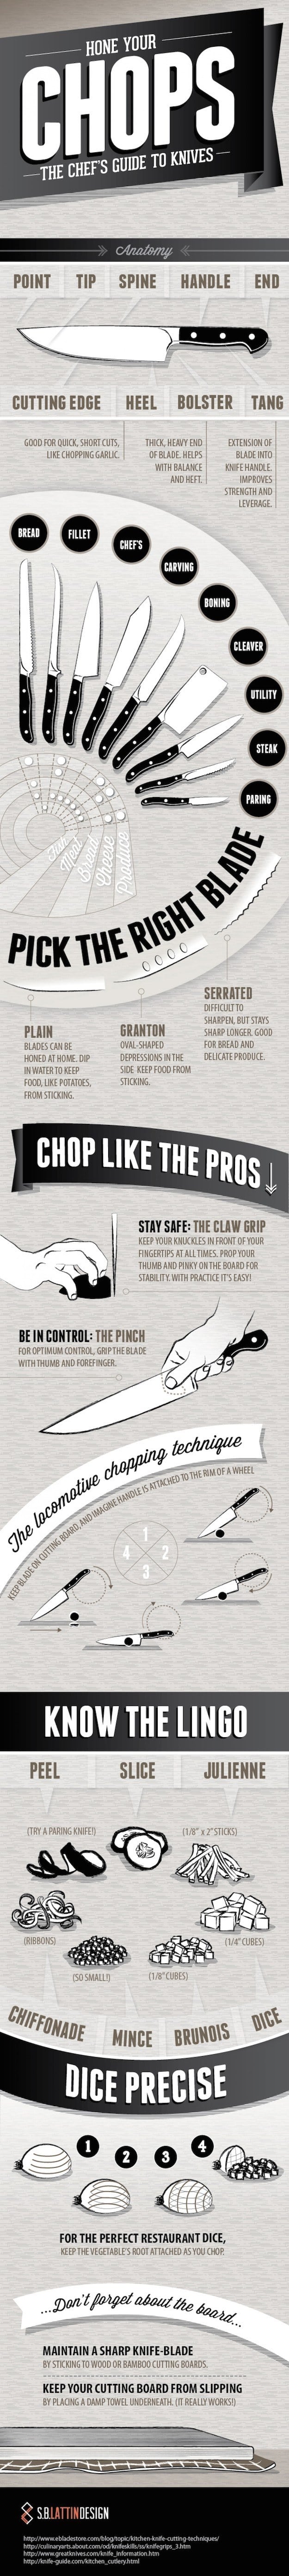 for knife skills.